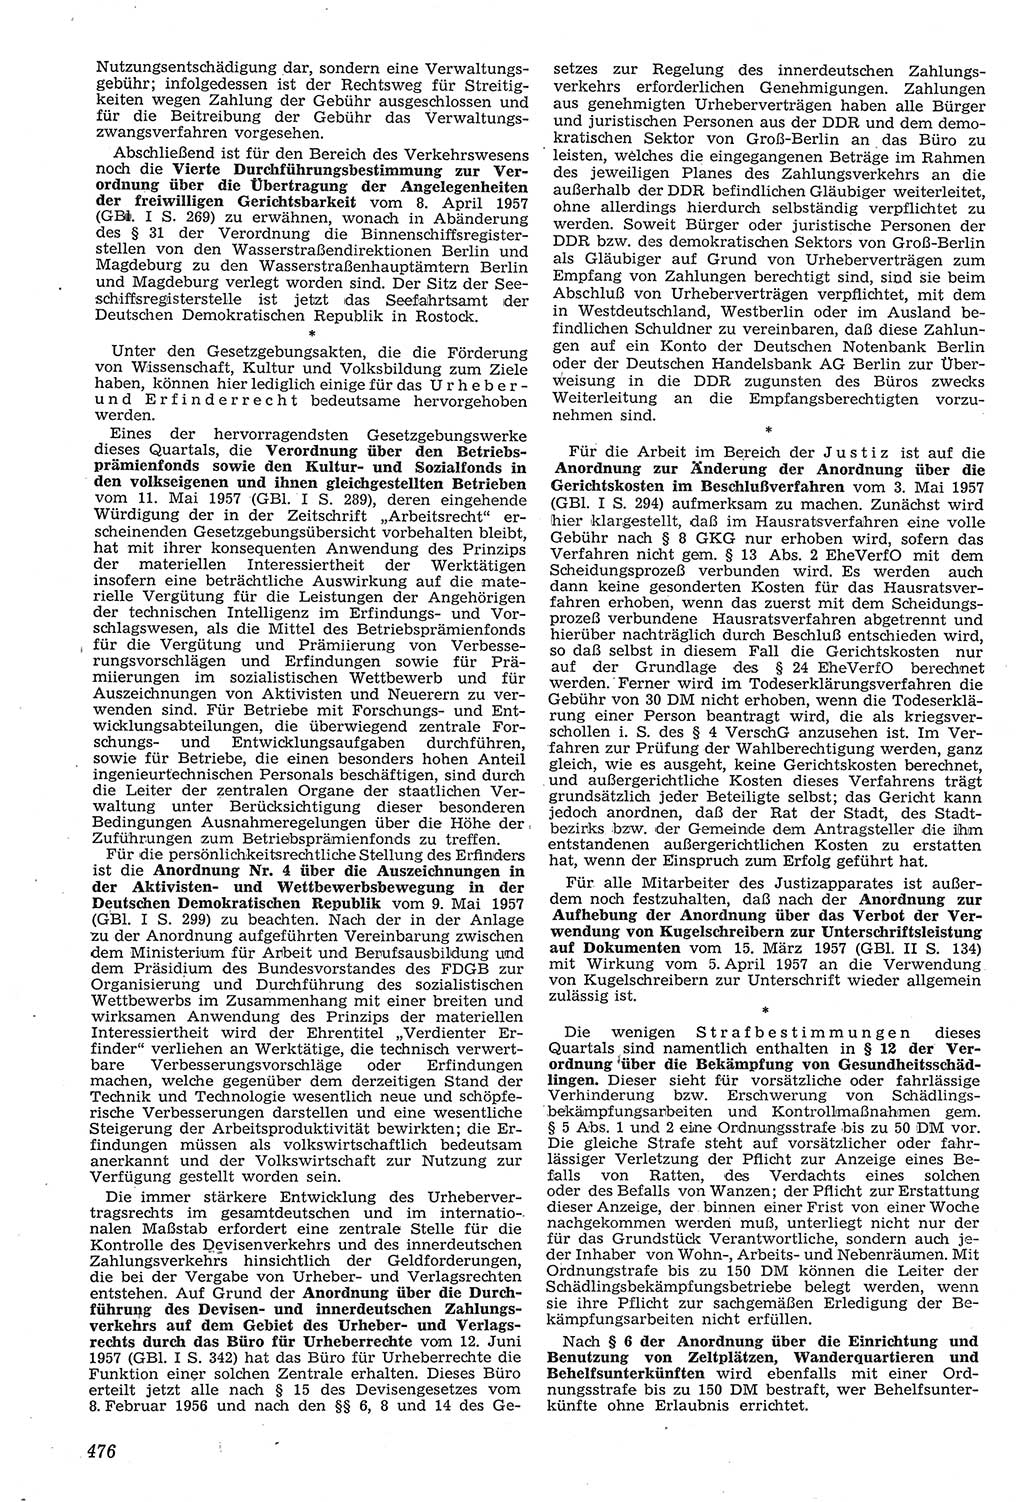 Neue Justiz (NJ), Zeitschrift für Recht und Rechtswissenschaft [Deutsche Demokratische Republik (DDR)], 11. Jahrgang 1957, Seite 476 (NJ DDR 1957, S. 476)